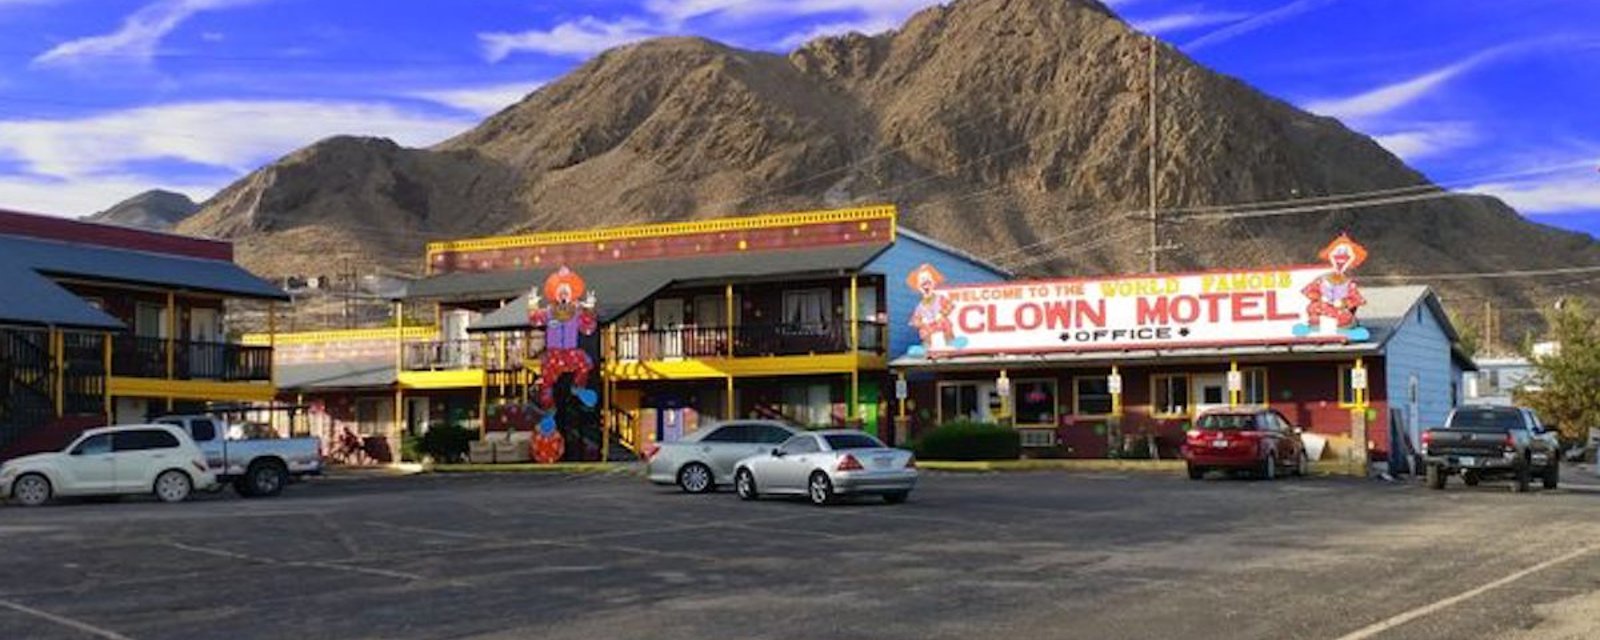 Pour un séjour qui donne la frousse, réservez au Clown Motel!